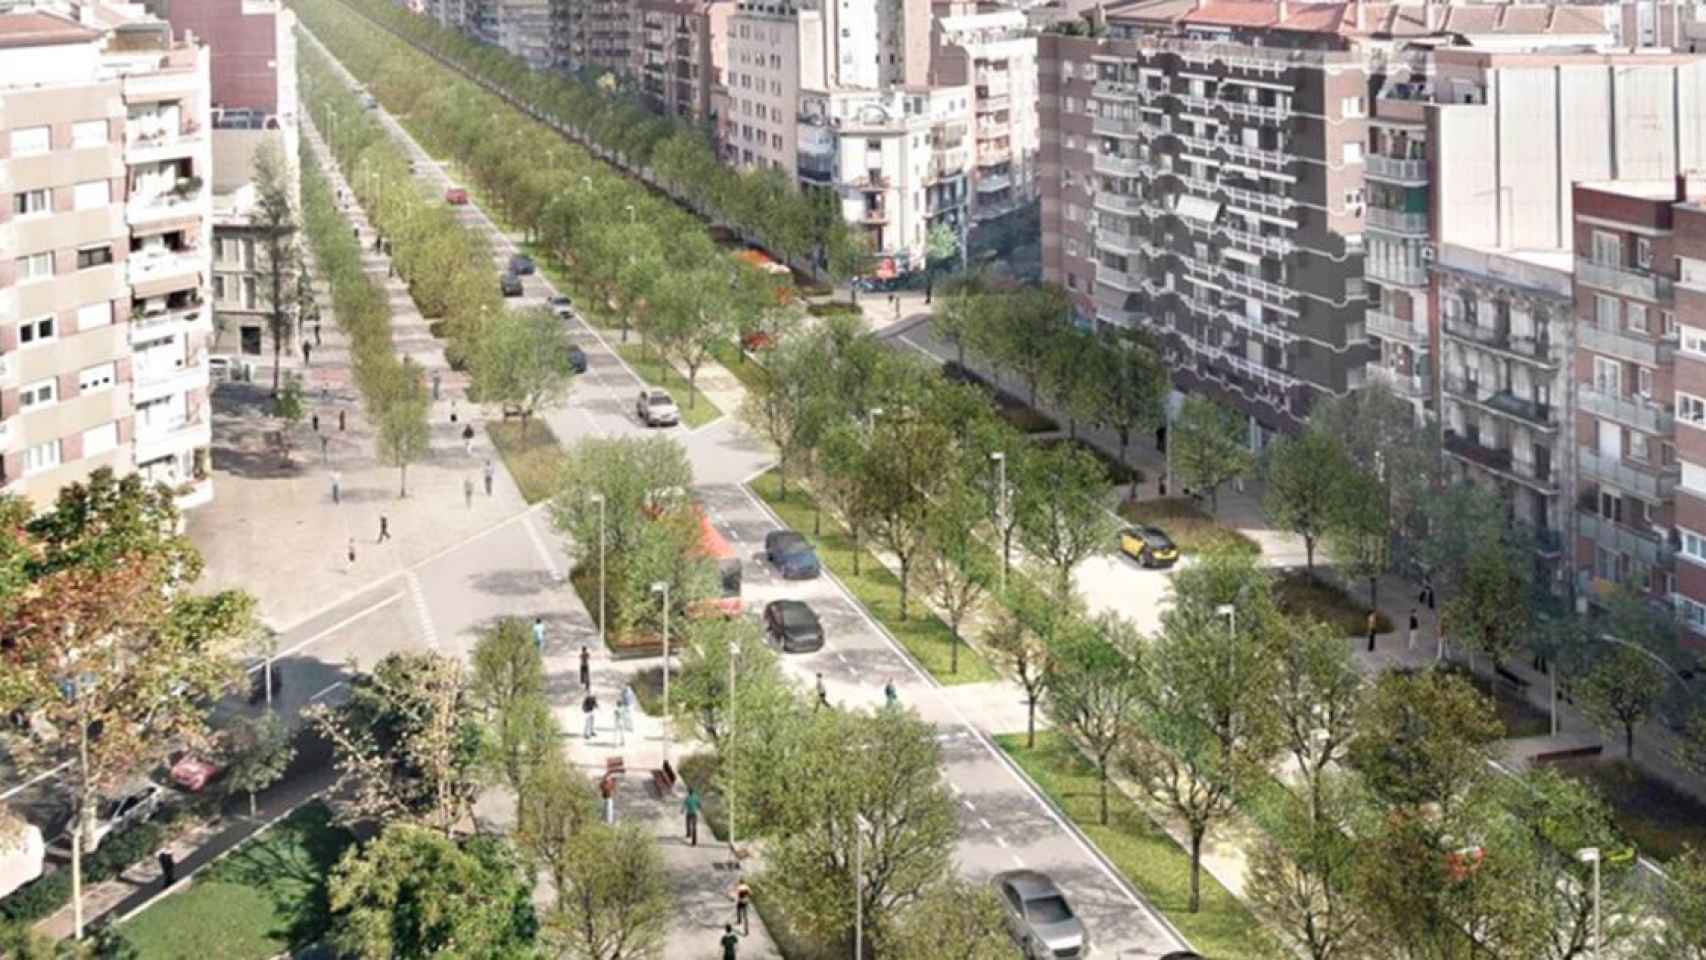 Proyecto de remodelación de la avenida Meridiana / AJUNTAMENT DE BARCELONA